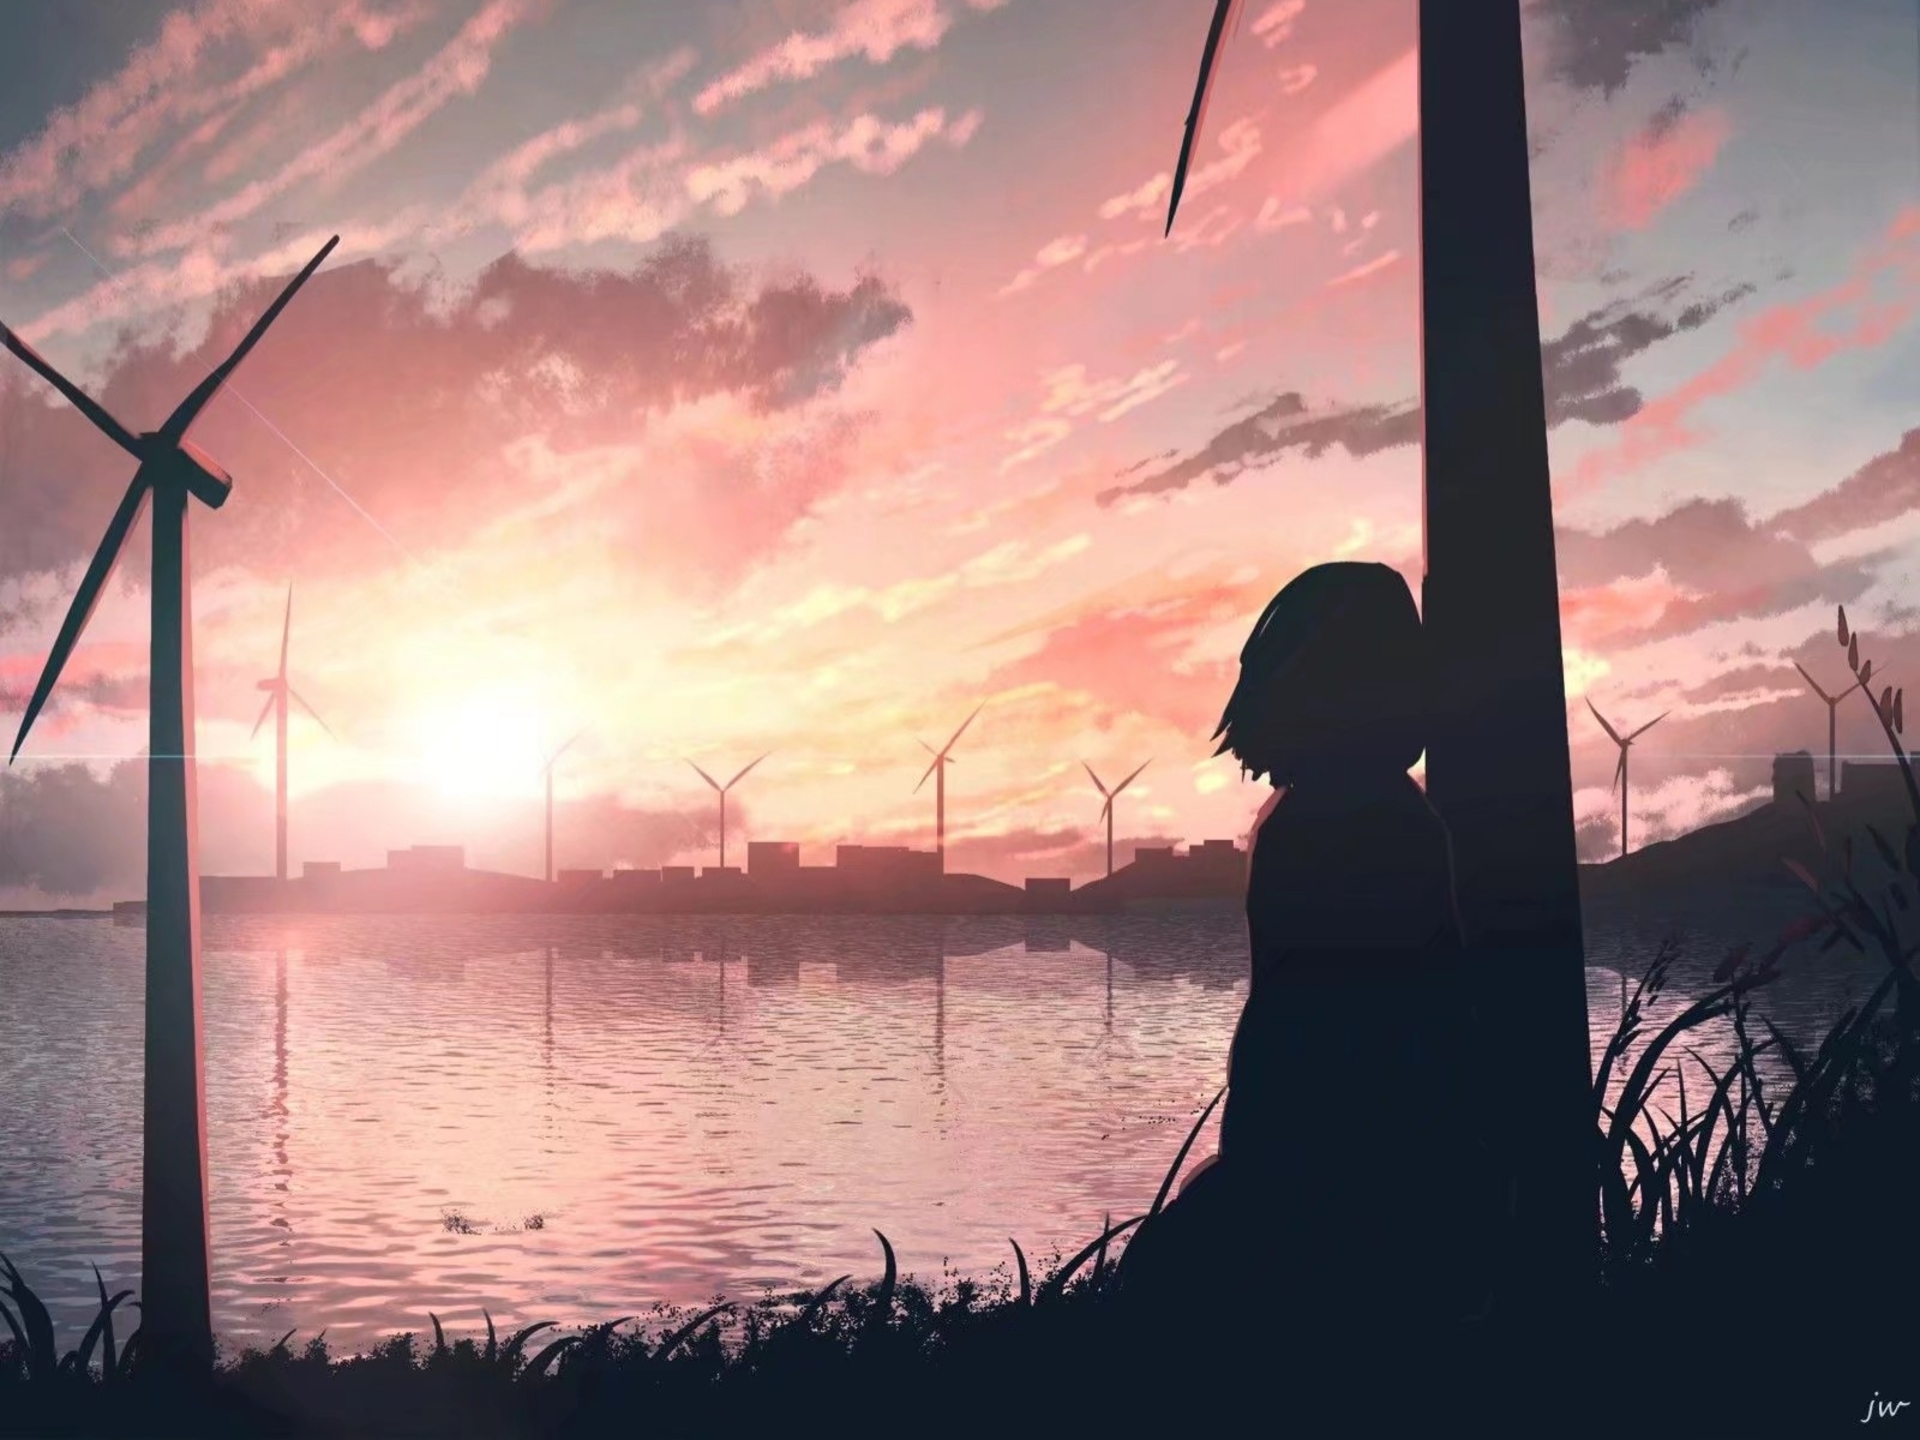 Anime 1920x1440 anime sunset landscape sky clouds wind turbine